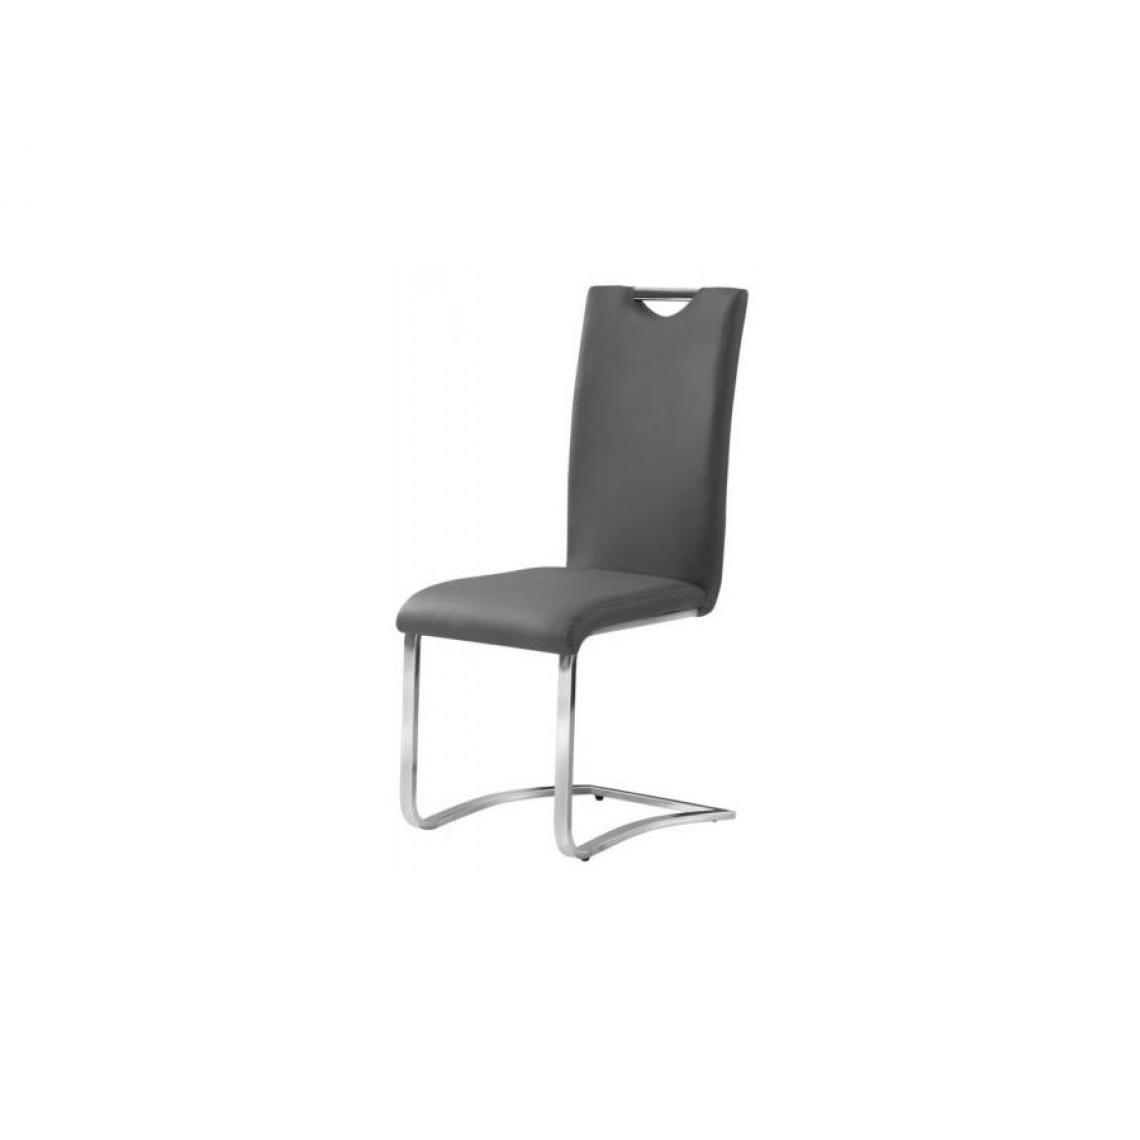 Hucoco - CORI | Chaise moderne cuir écologique | Dimensions : 101x42x43 cm | Salle à manger salon bureau modernes | Design ergonomique - Gris - Chaises